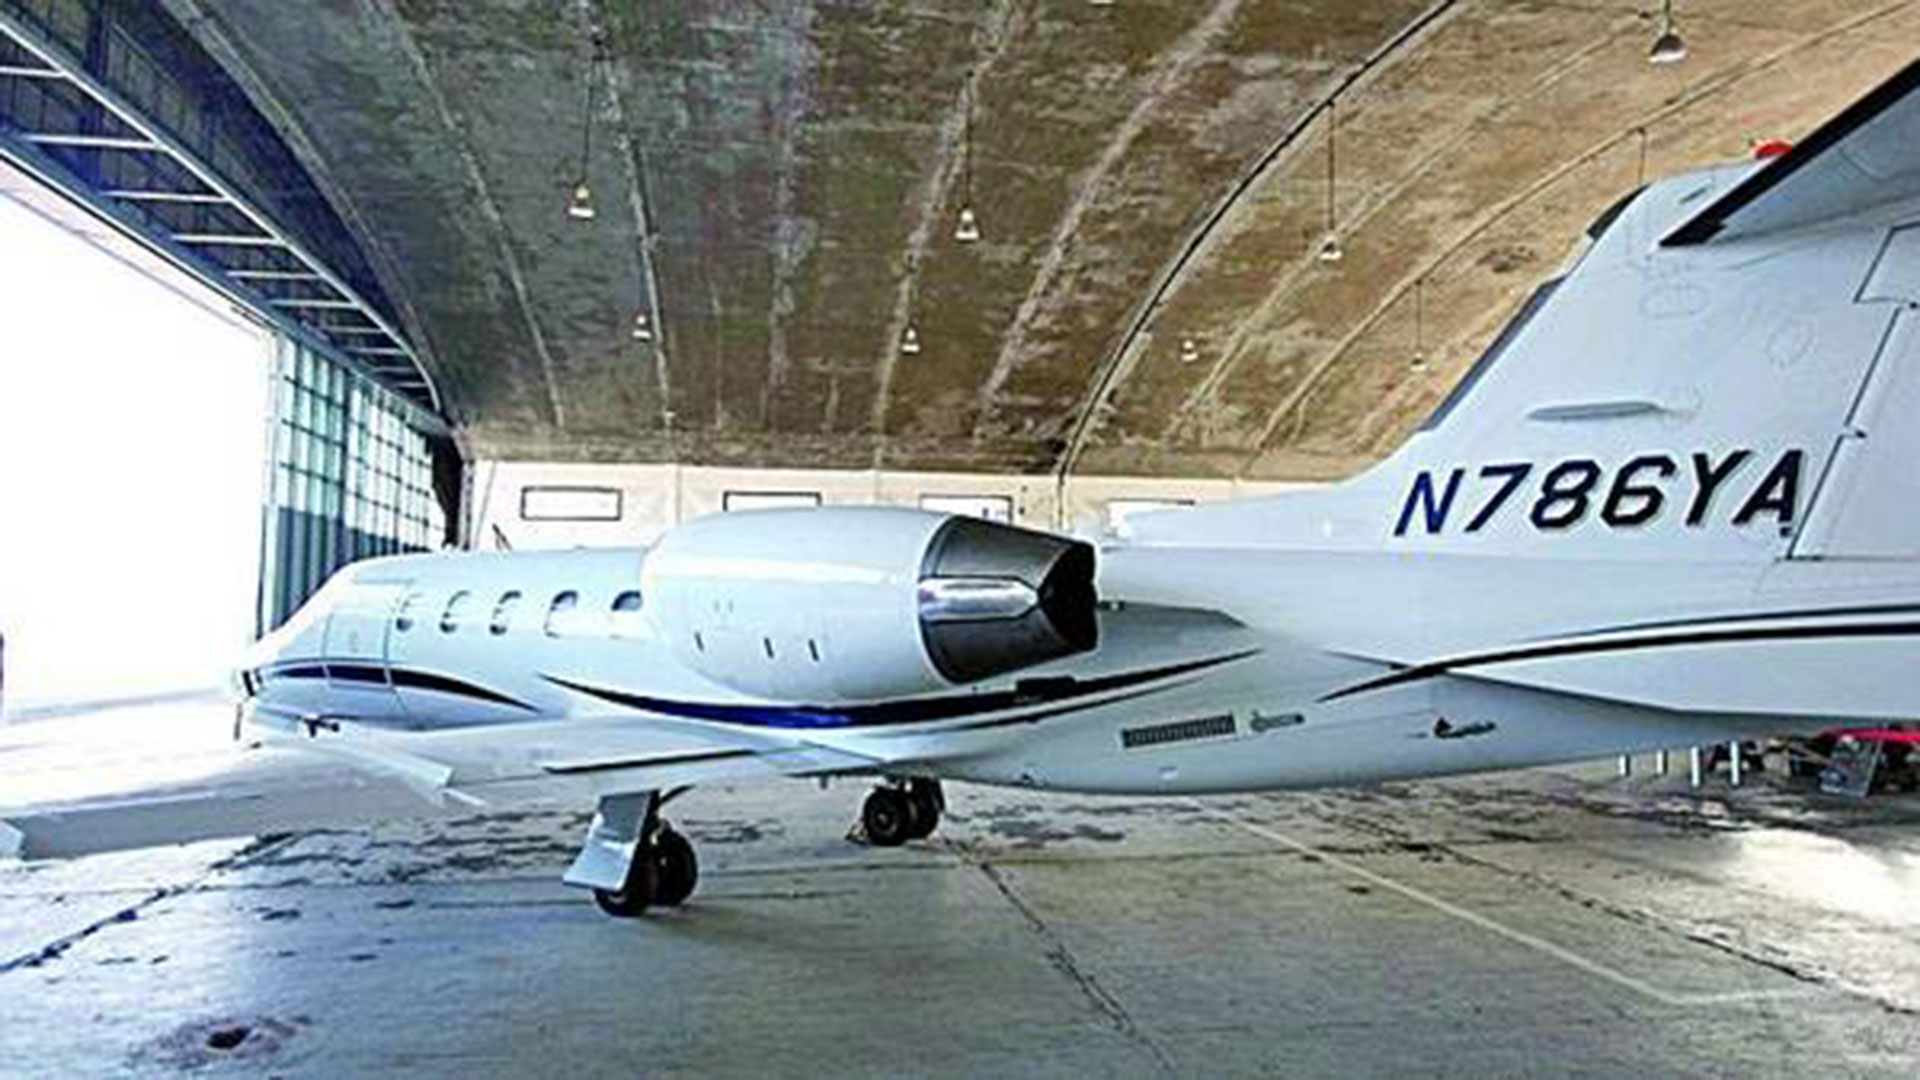 El Learjet 31A matrícula N786YA que usaba Jaime